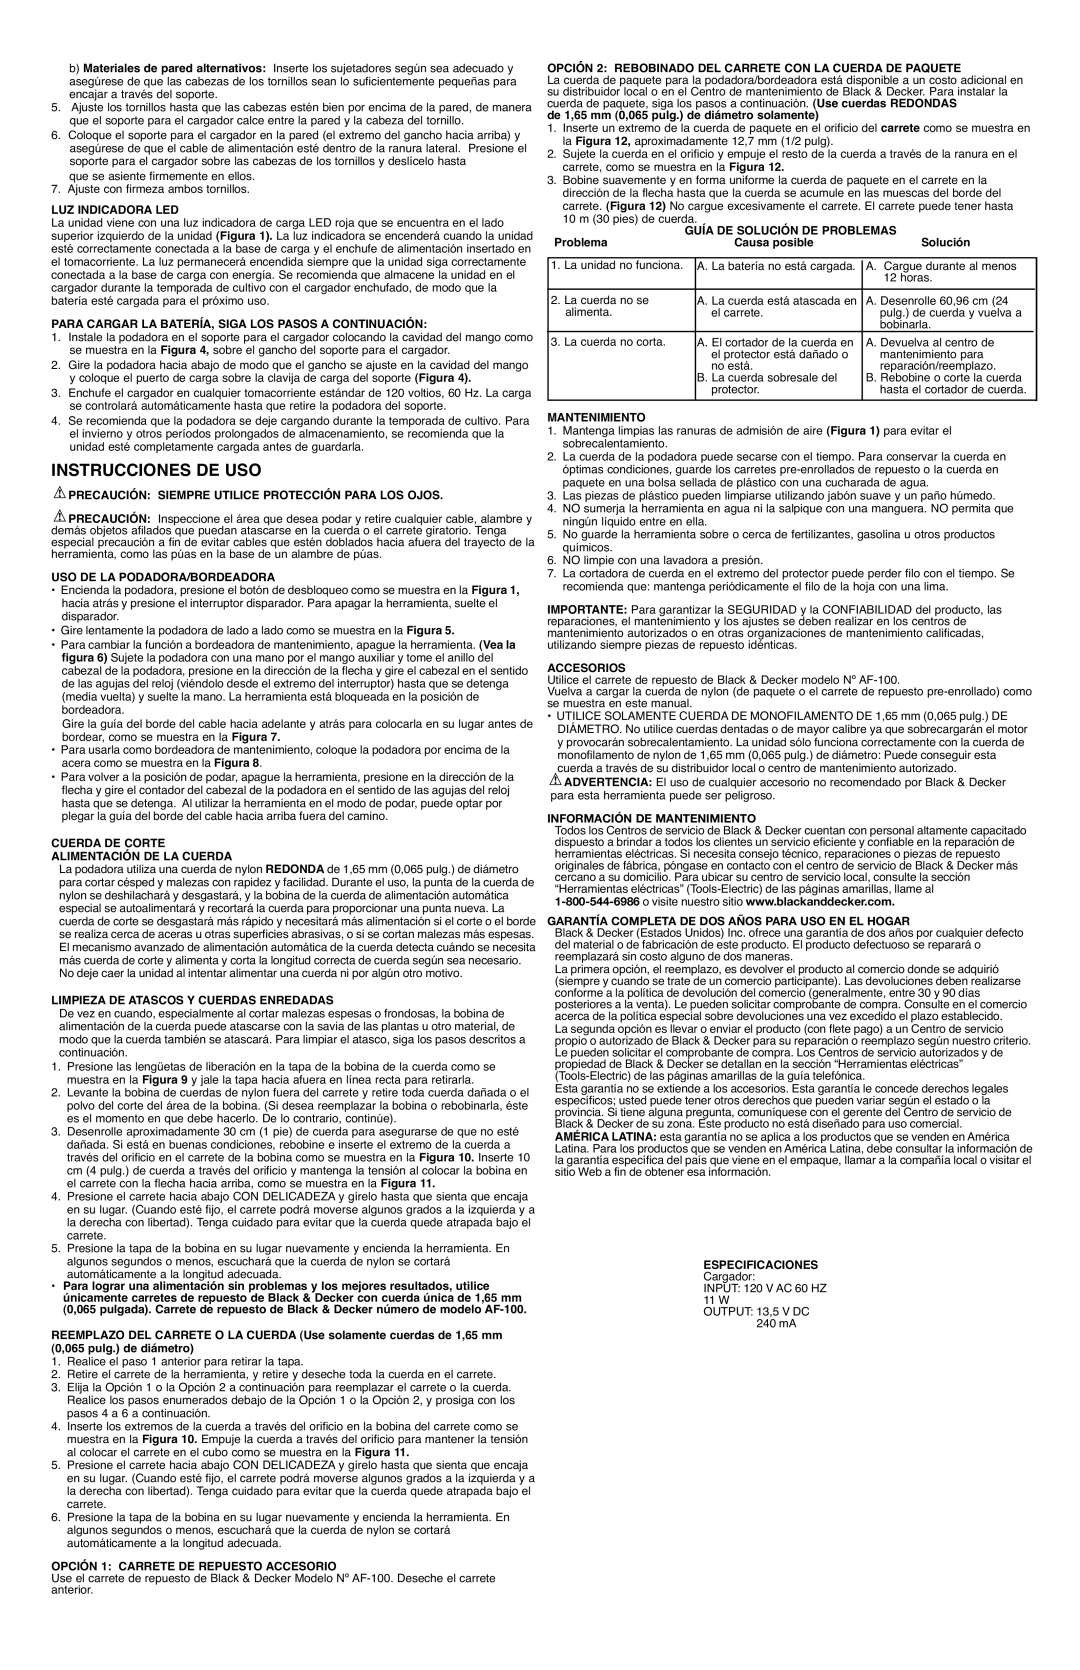 Black & Decker CST1100 instruction manual Instrucciones De Uso, Información De Mantenimiento 